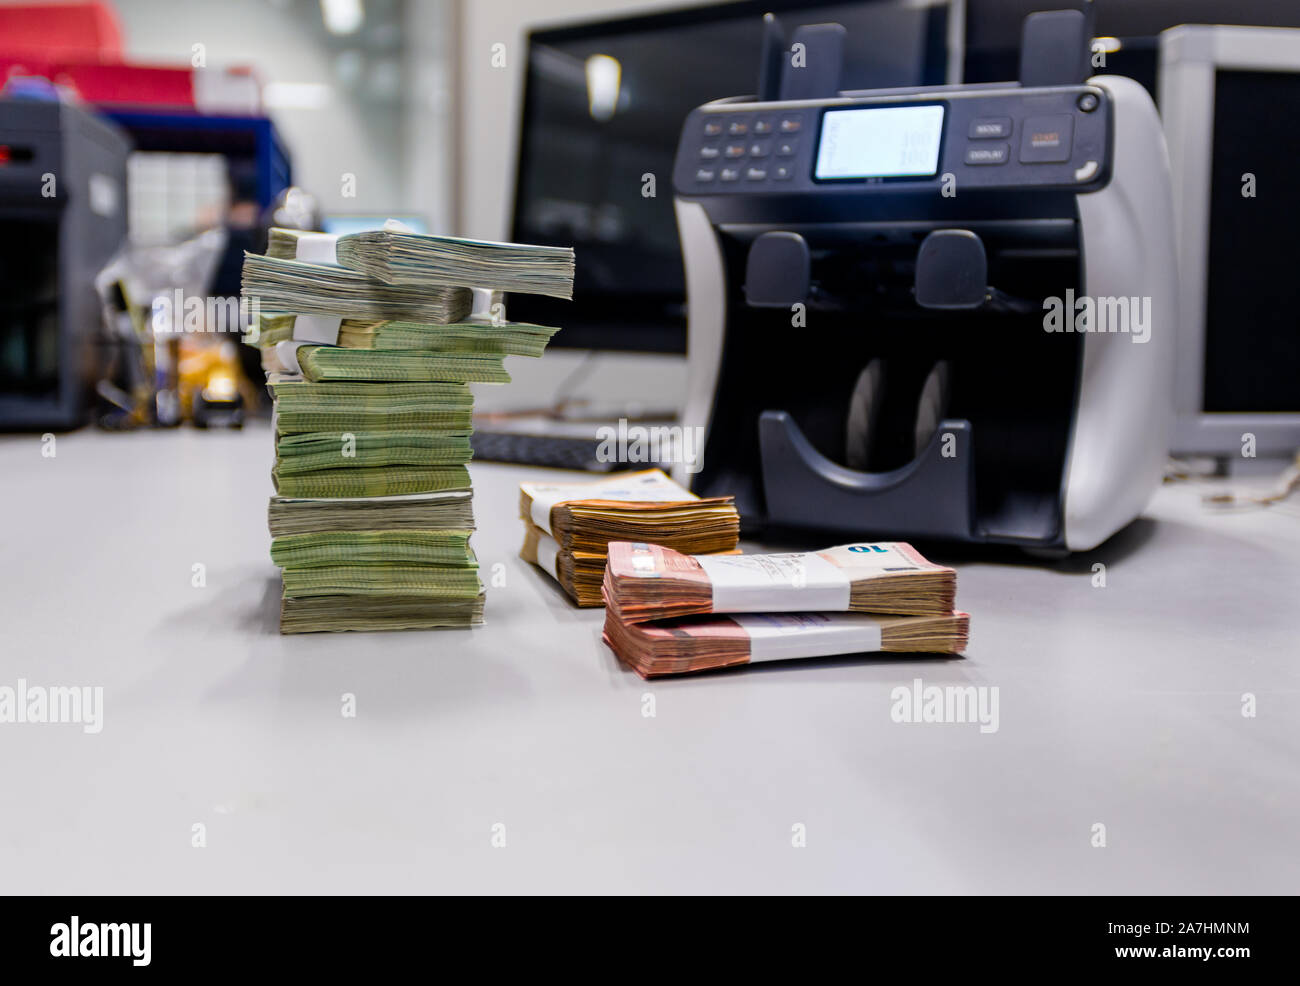 Euro €-Banknoten gestapelt und zusammen mit Währung Bands vor der elektronischen Zählmaschine gebunden Stockfoto